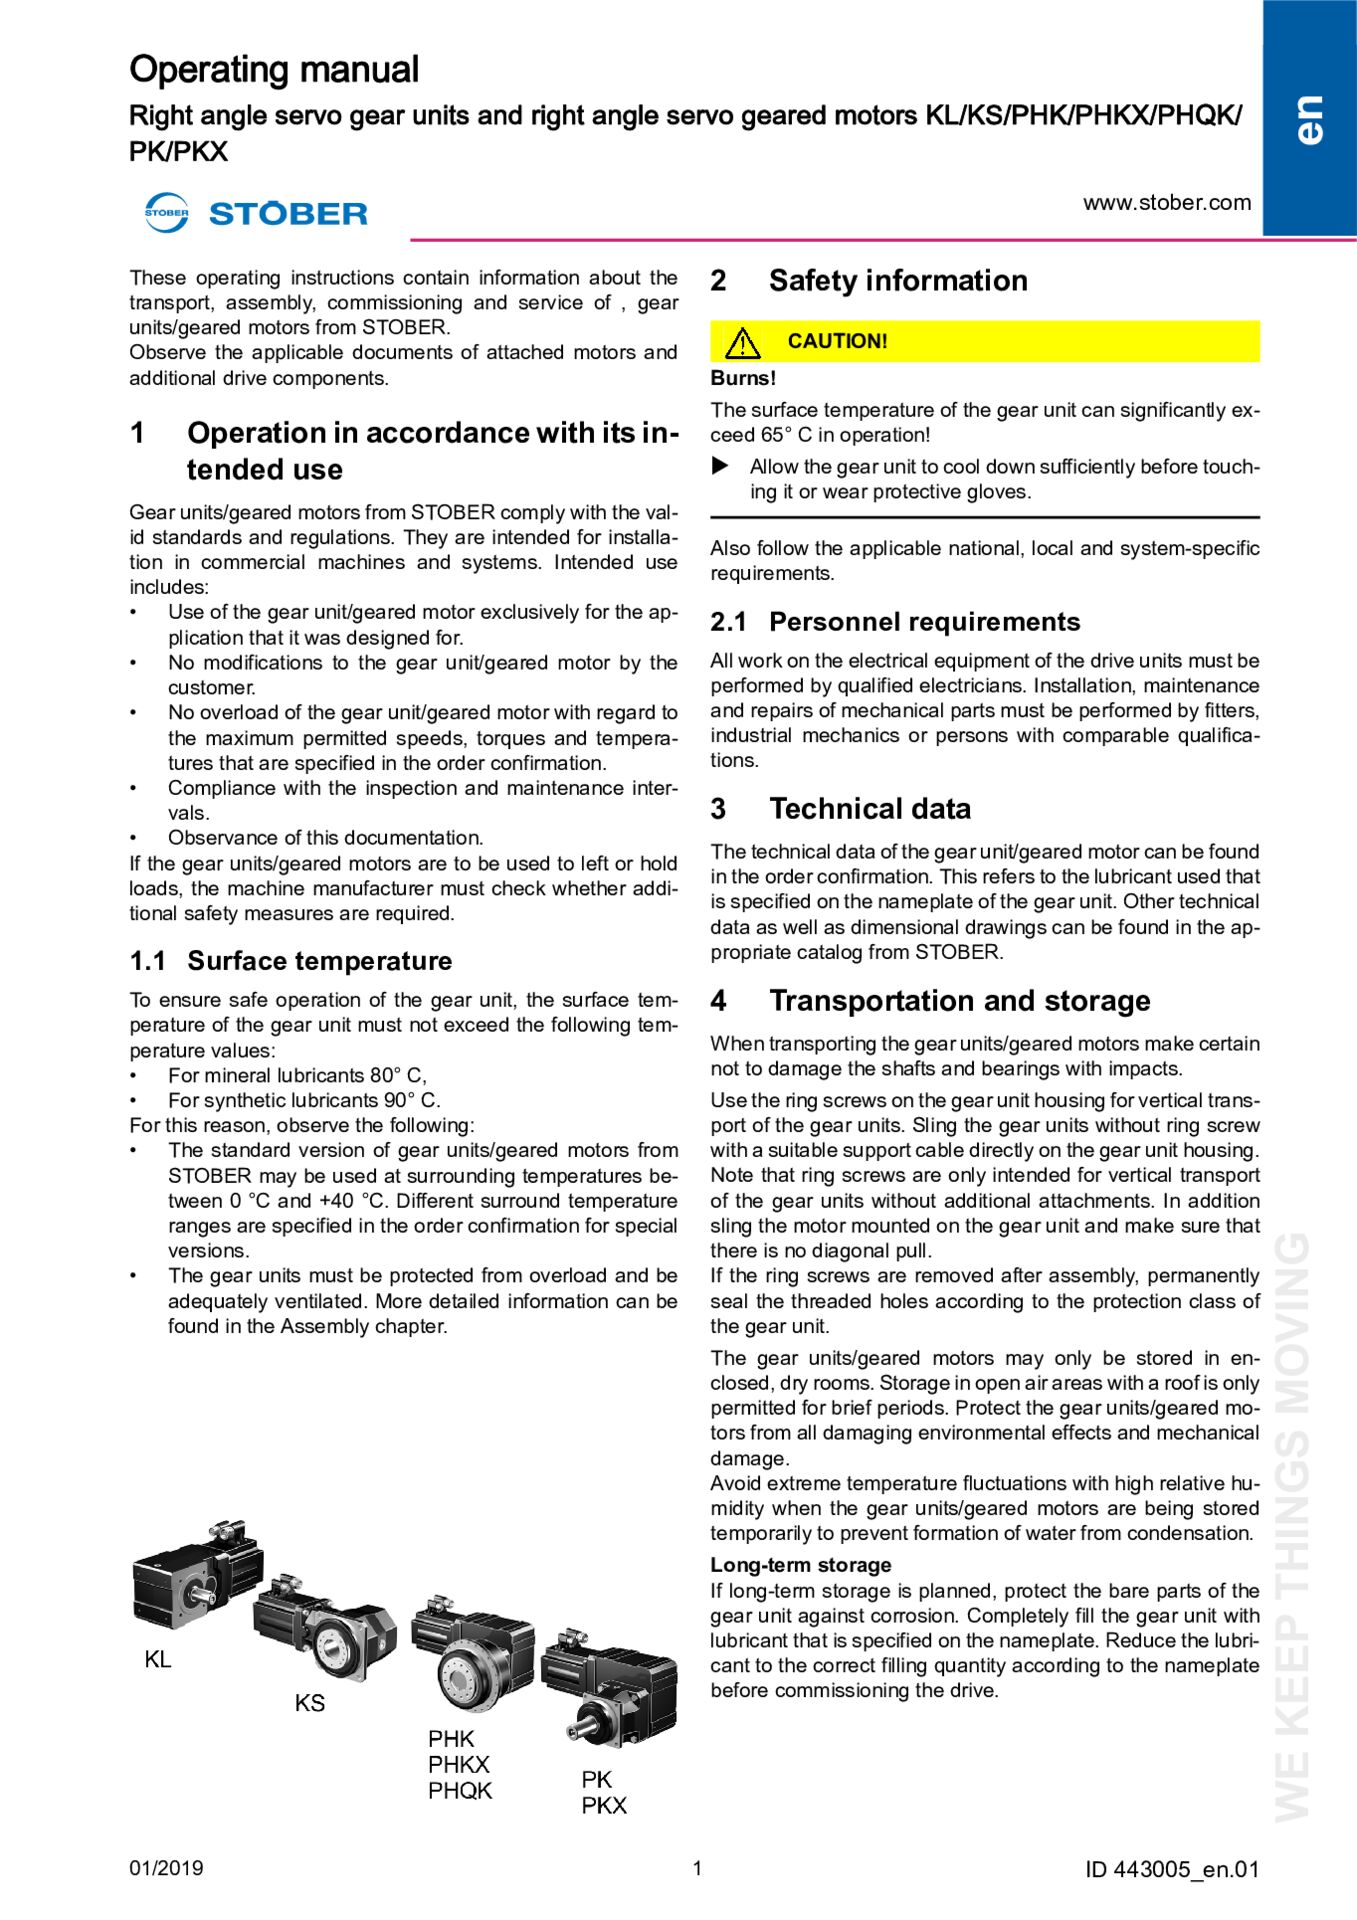 Istruzioni per l''uso Riduttori e motoriduttori planetari KL/KS/PHK/PHKX/ PHQK/PK/PKX (G2)